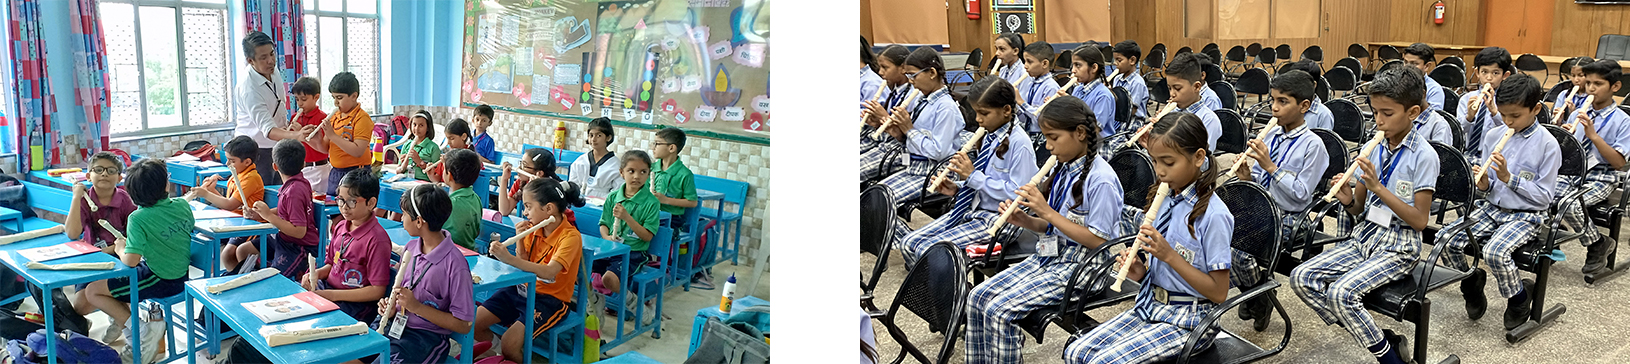 インドにおける取り組み事例 、リコーダーを使った音楽の授業